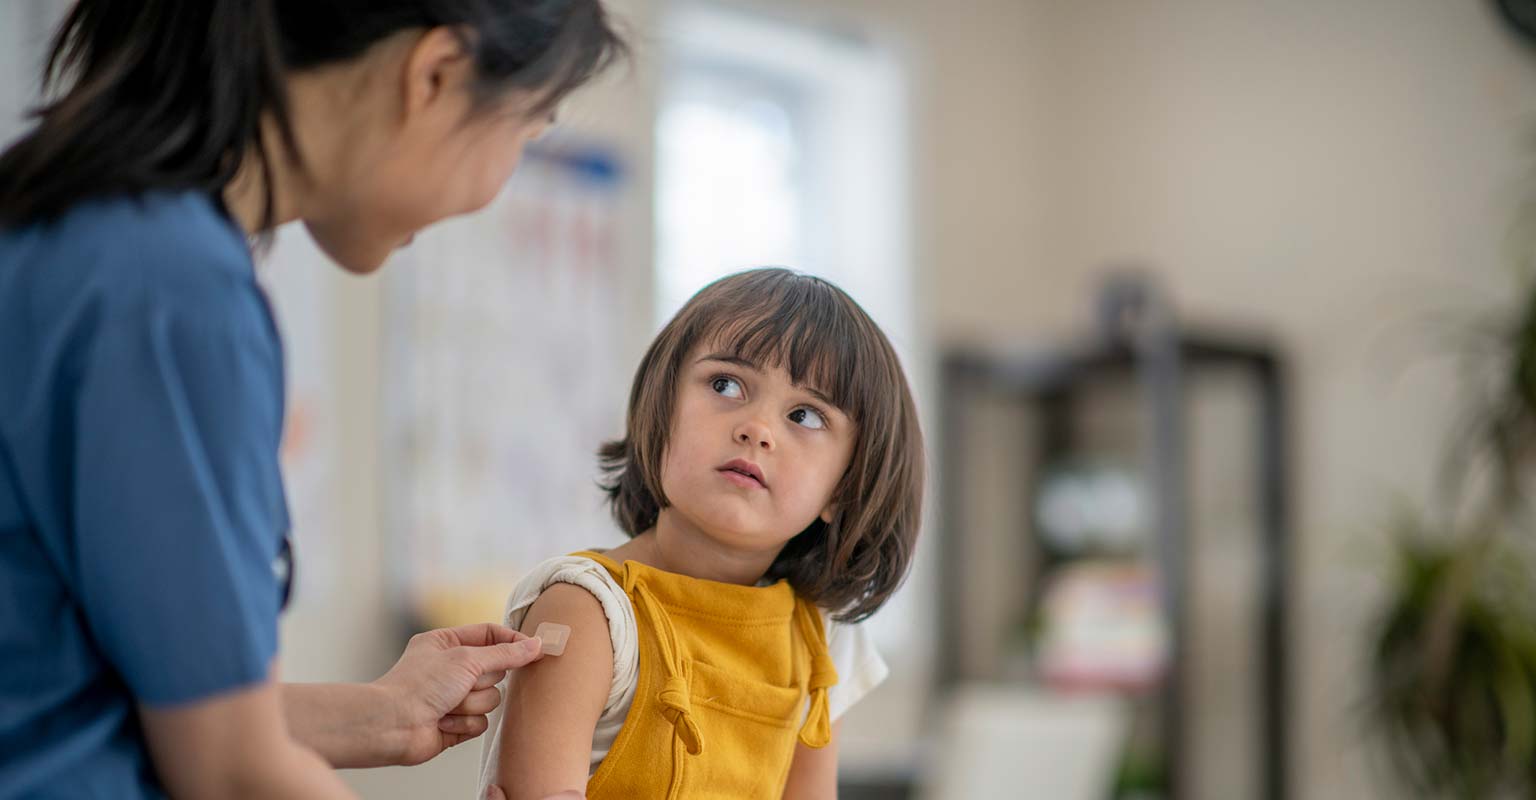 child receiving immunization from nurse